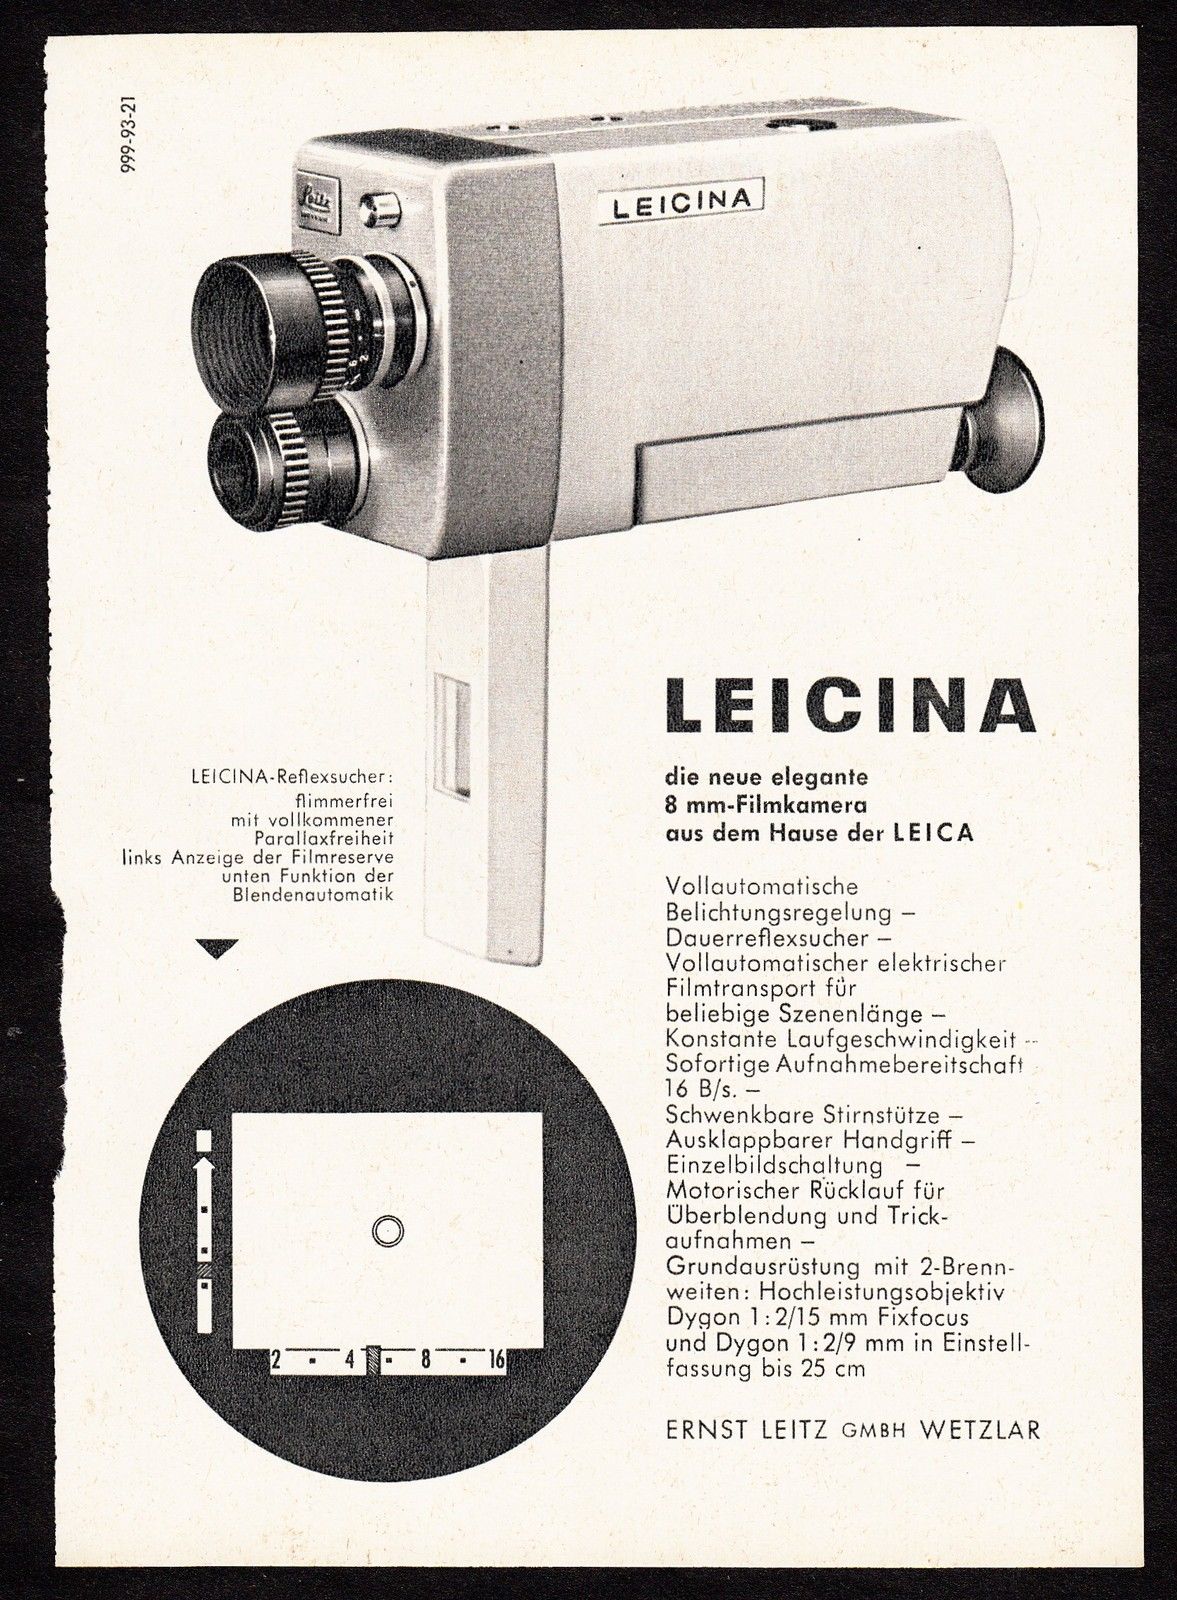 LEITZ Leicina 8S - Publicité 1960